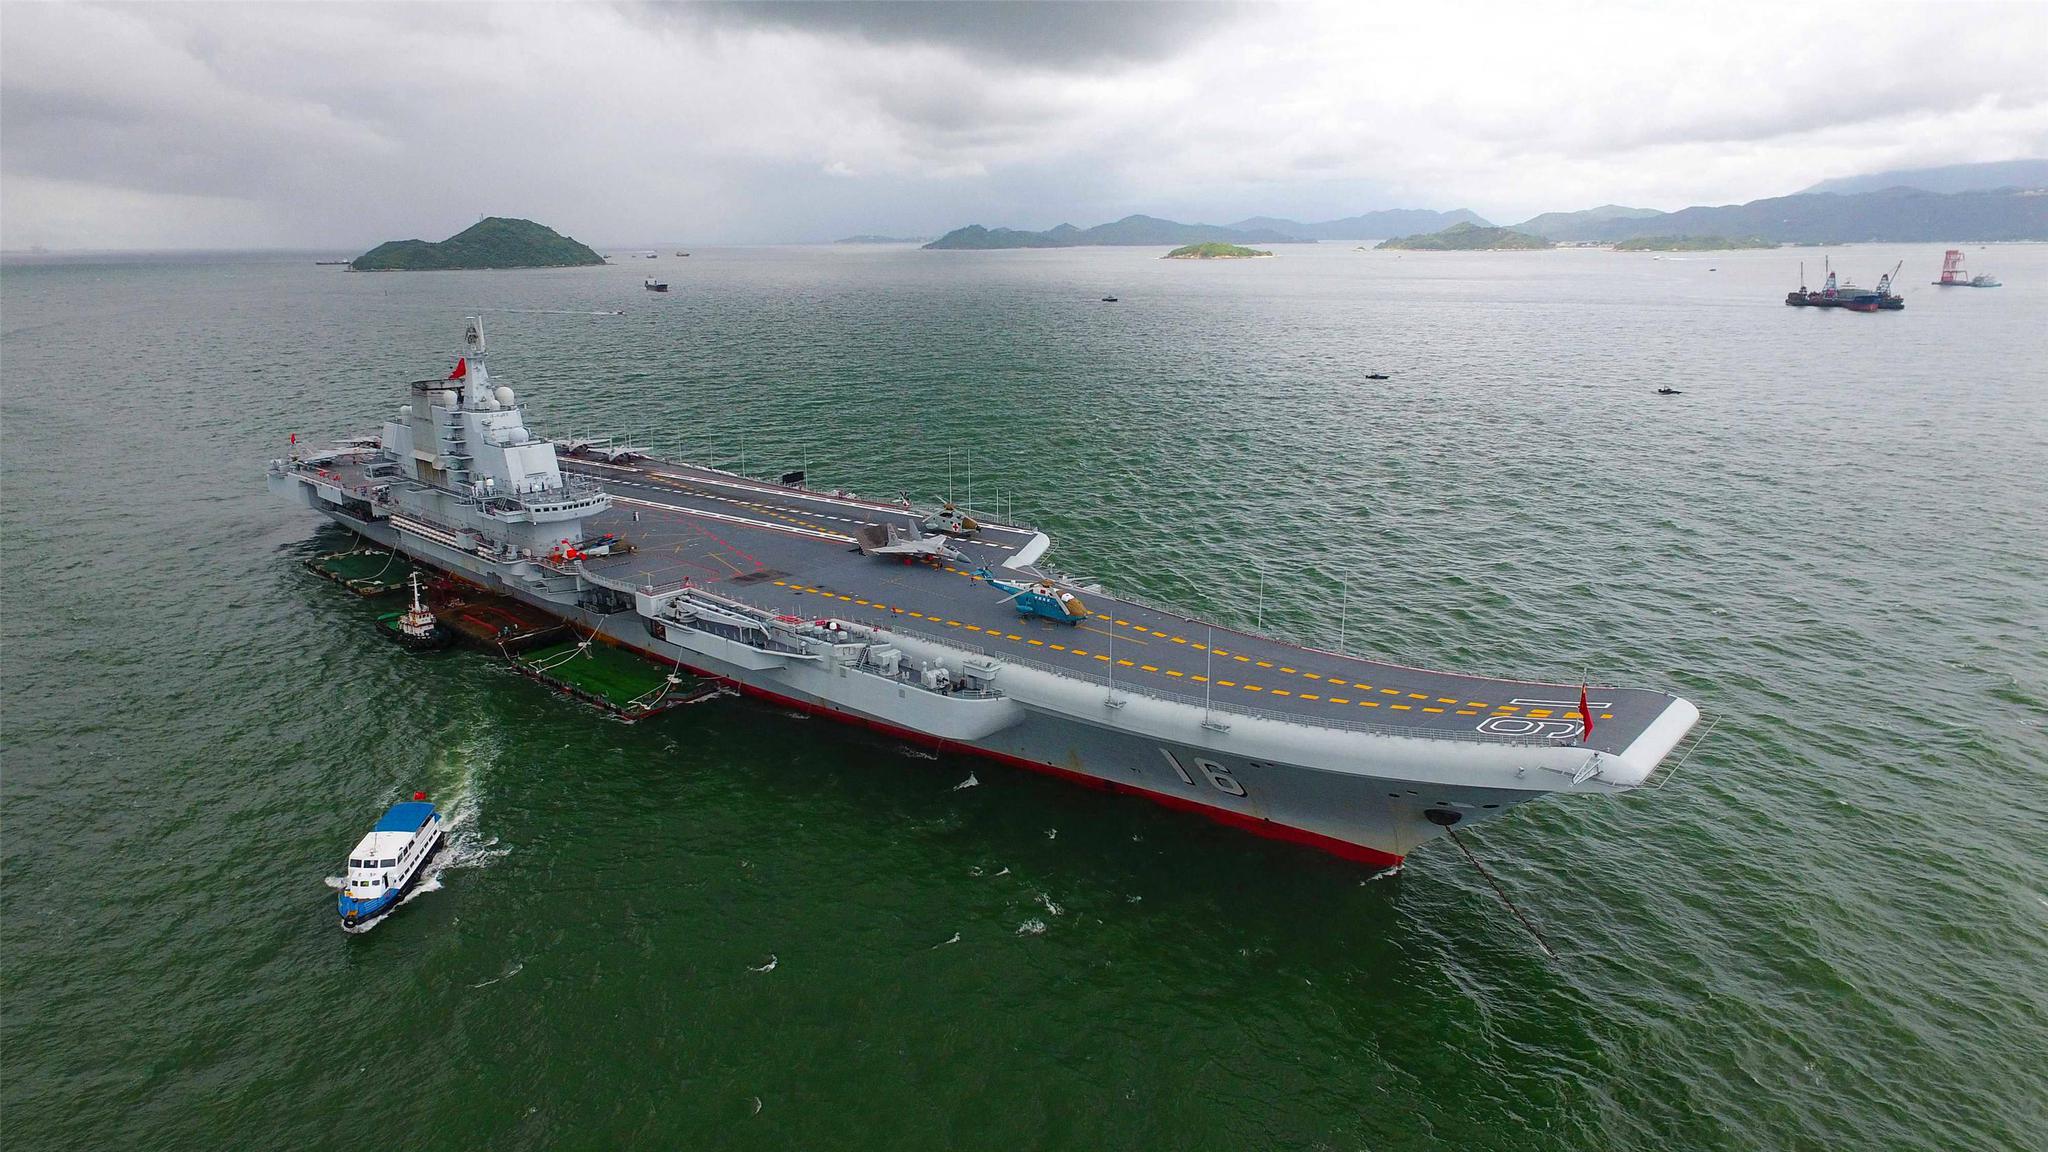 振奋人心:中国向世界证明了自己的强大 航母的使命将是远海